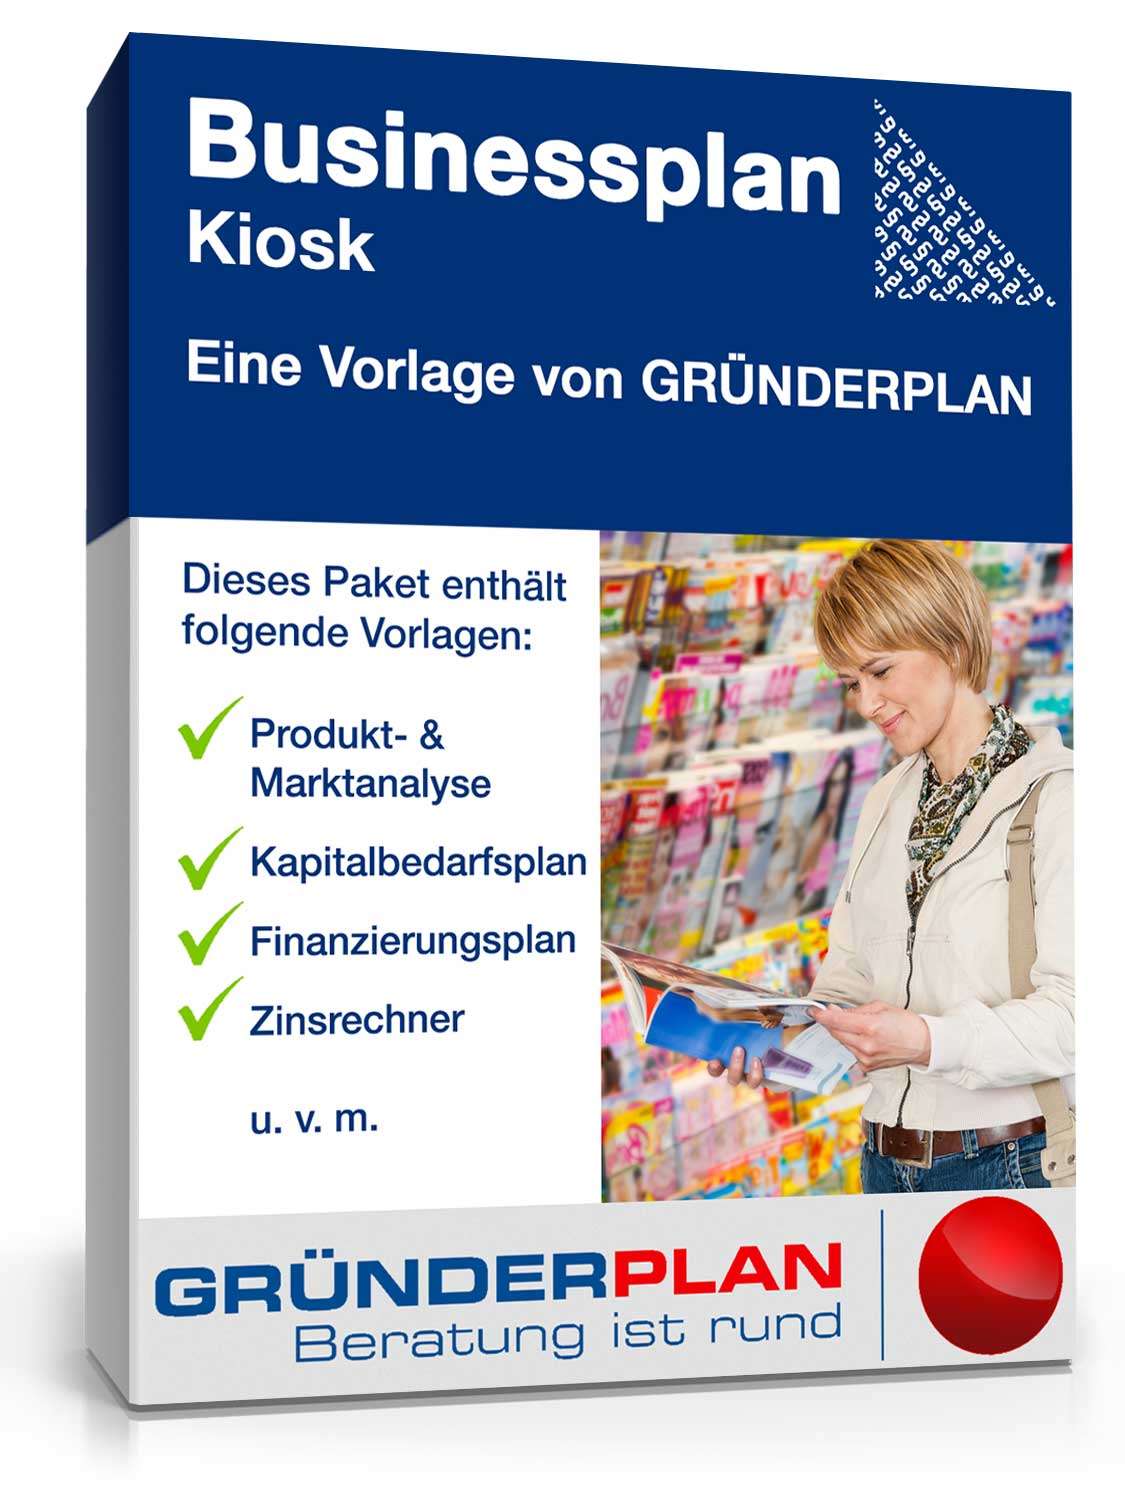 Hauptbild des Produkts: Businessplan Kiosk von Gründerplan